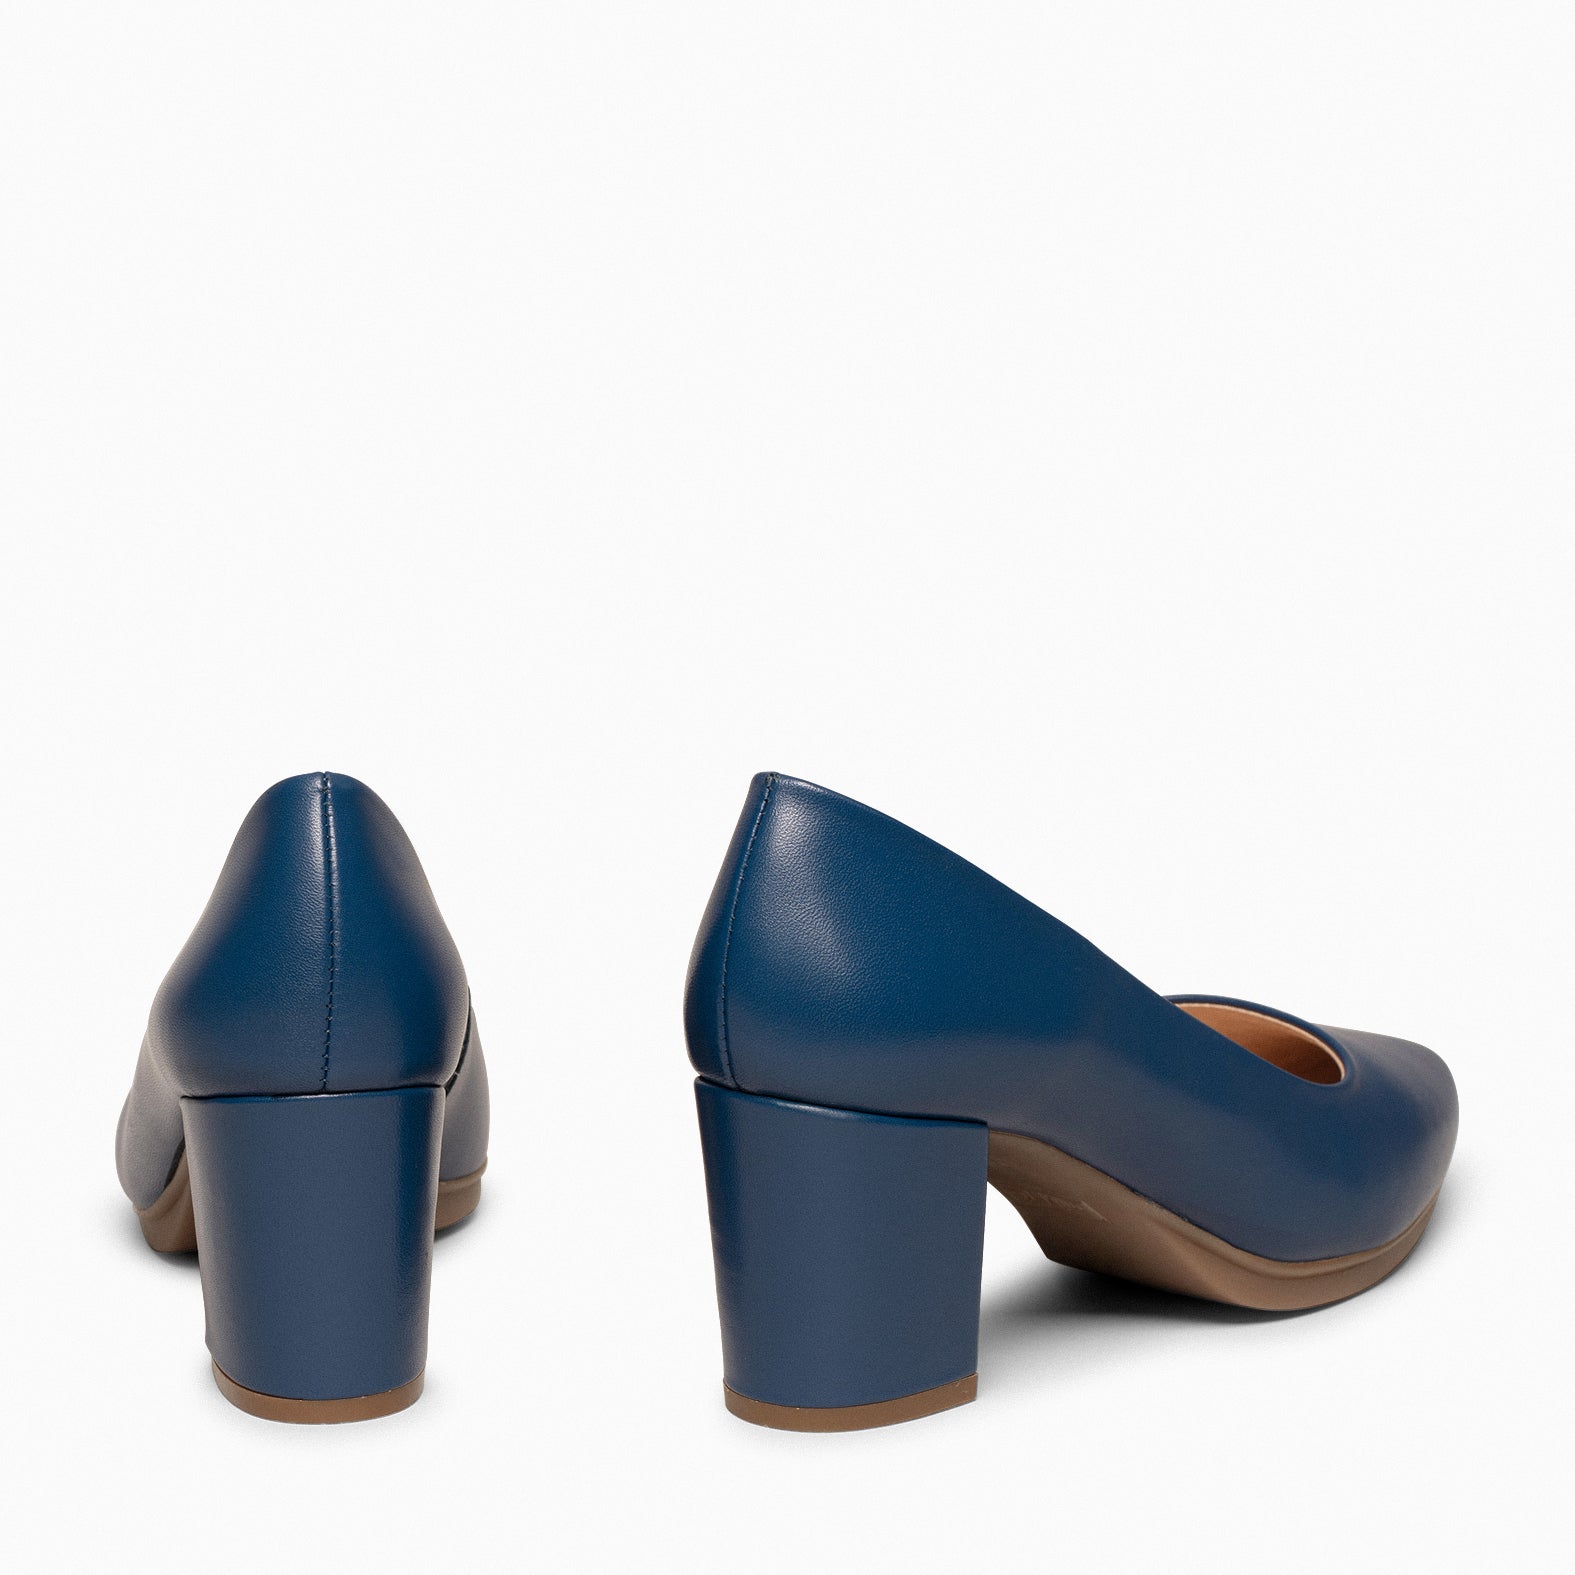 URBAN S SALON – NAVY nappa leather mid heel